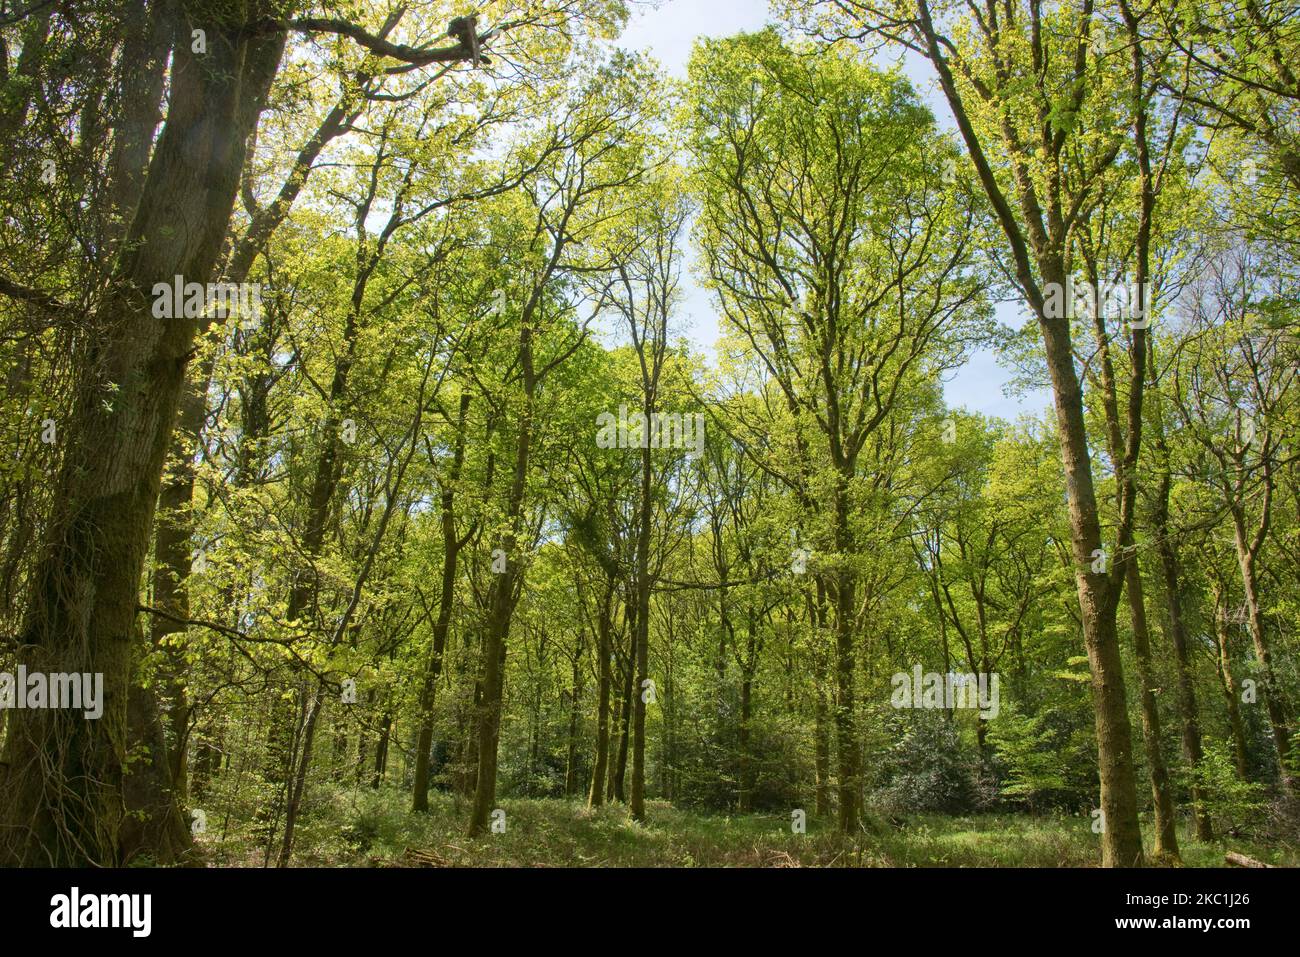 Arbres matures de hêtre commun (Fagus sylvatica) dans les bois denses de la forêt de Savernake avec de jeunes feuilles de printemps vert acide à la fin du printemps, Wiltshire, mai Banque D'Images